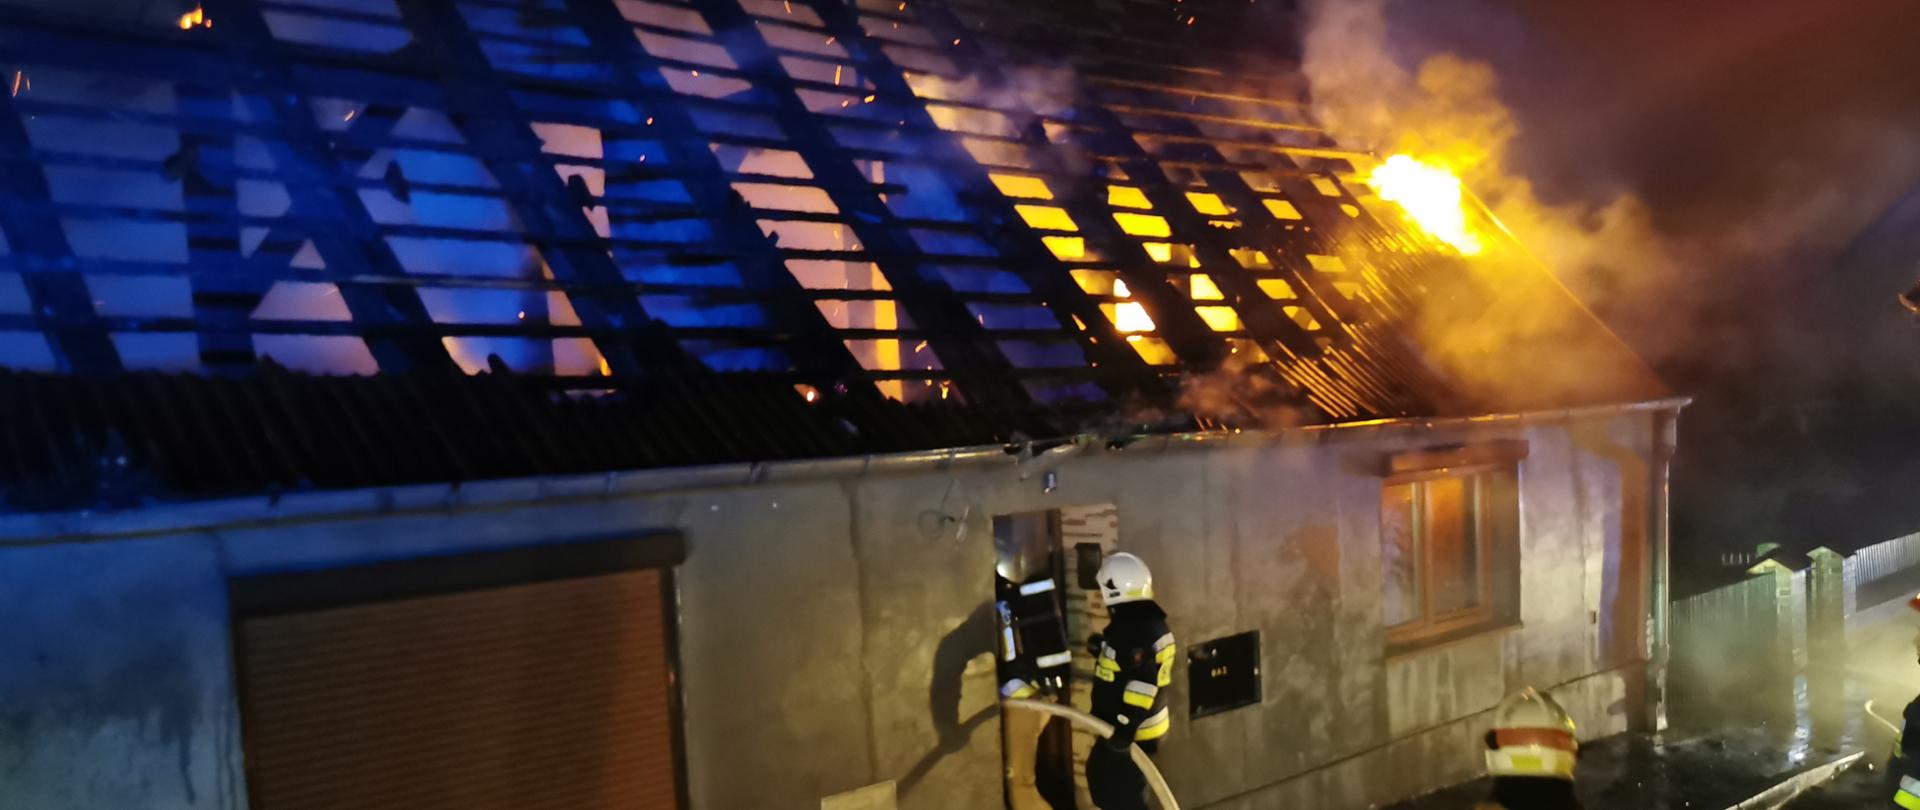 Zdjęcie przedstawia pożar dachu w budynku jednorodzinnym, widoczne płomienie na dachu budynku, strażacy wchodzą do środka obiektu z linią gaśniczą.